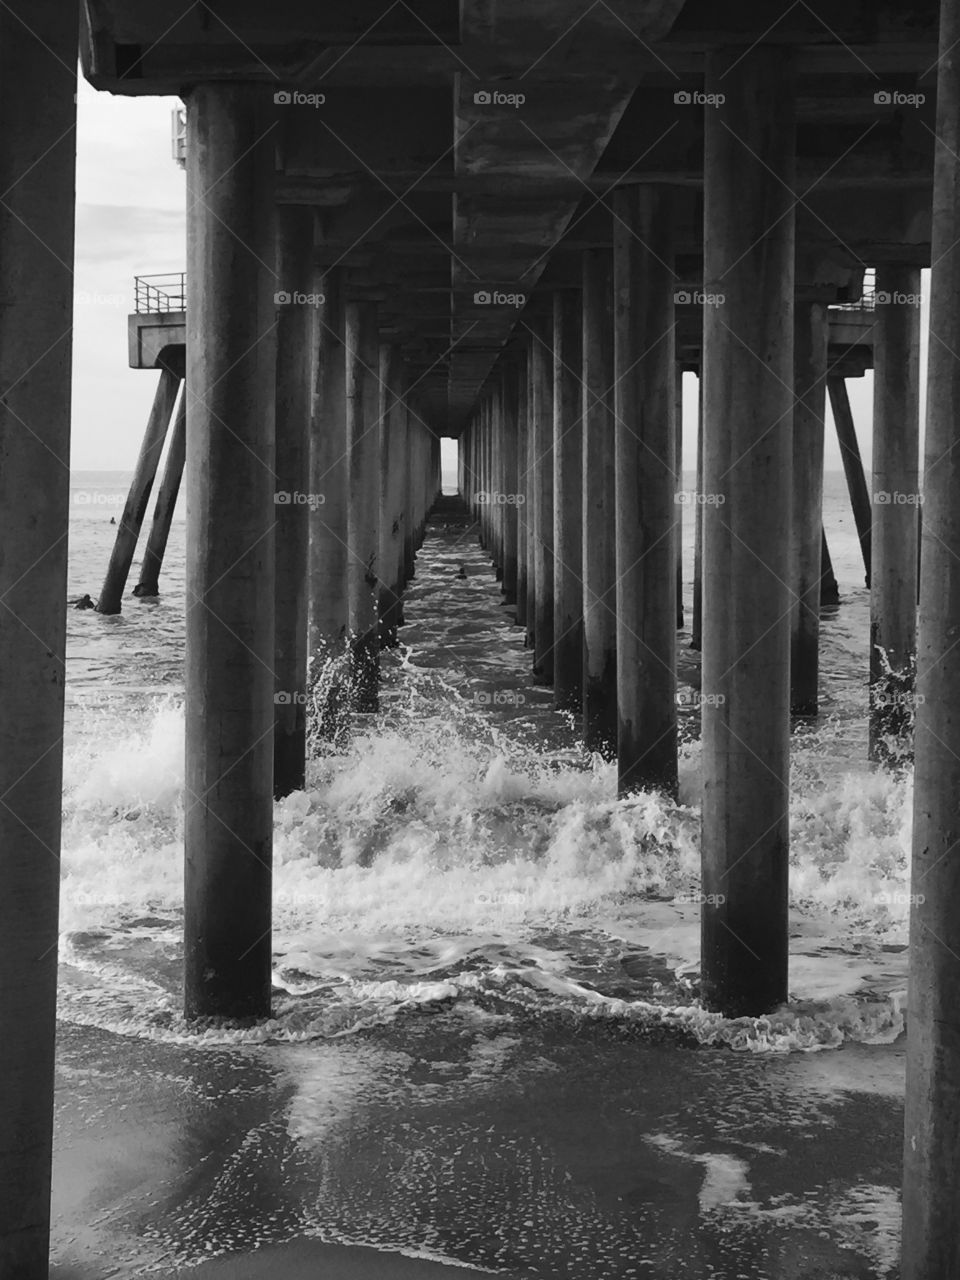 Splashing at the pier